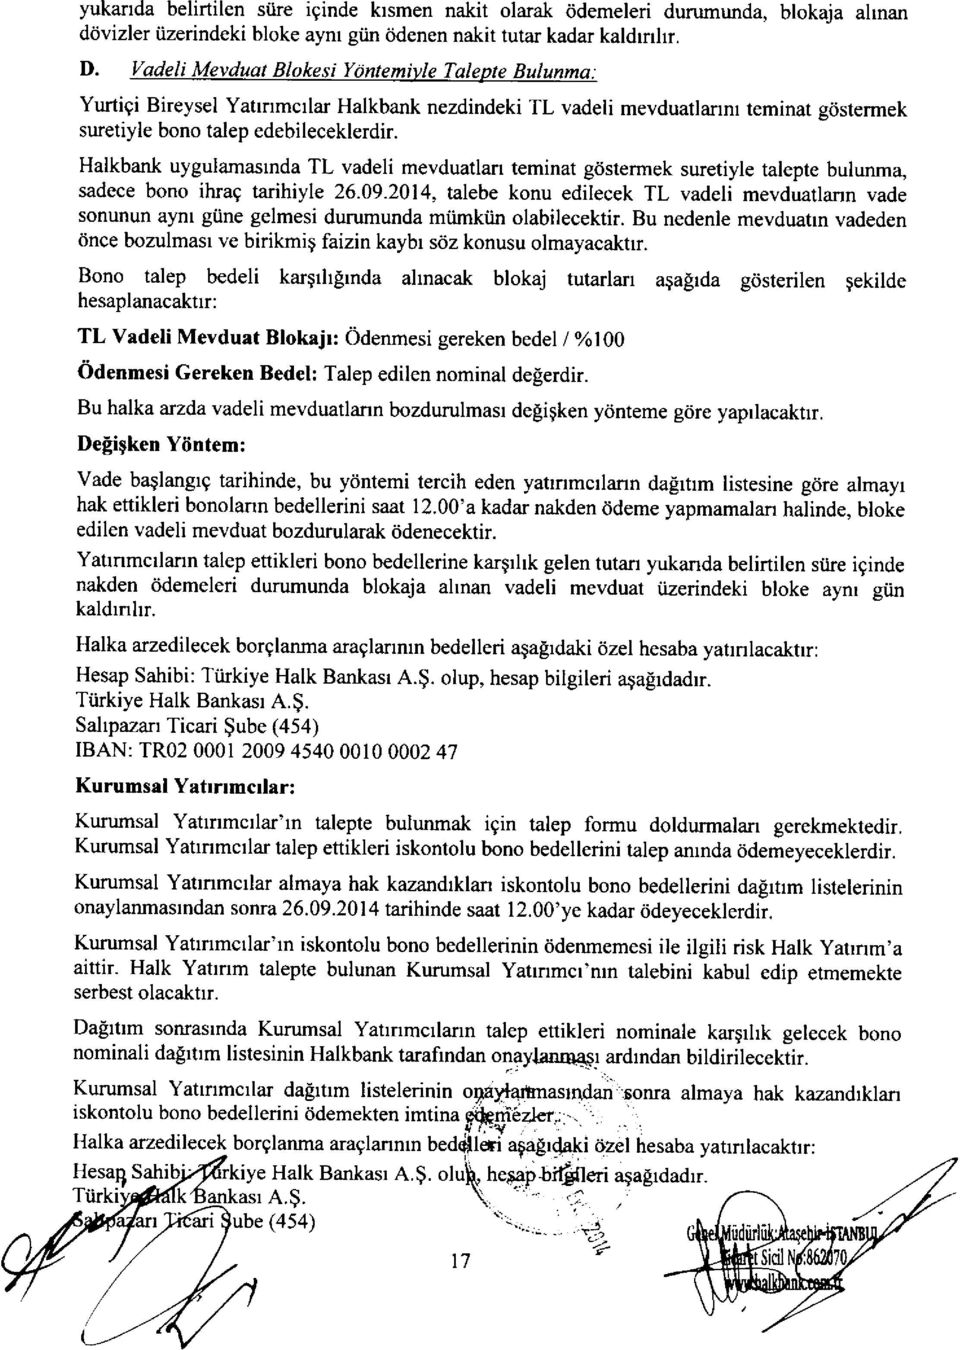 Halkbank uygulamasrnda TL vadeli mevduatlan teminat gdstermek suretiyle talepte bulunma, sadece bono ihrag tarihiyle 26.09.